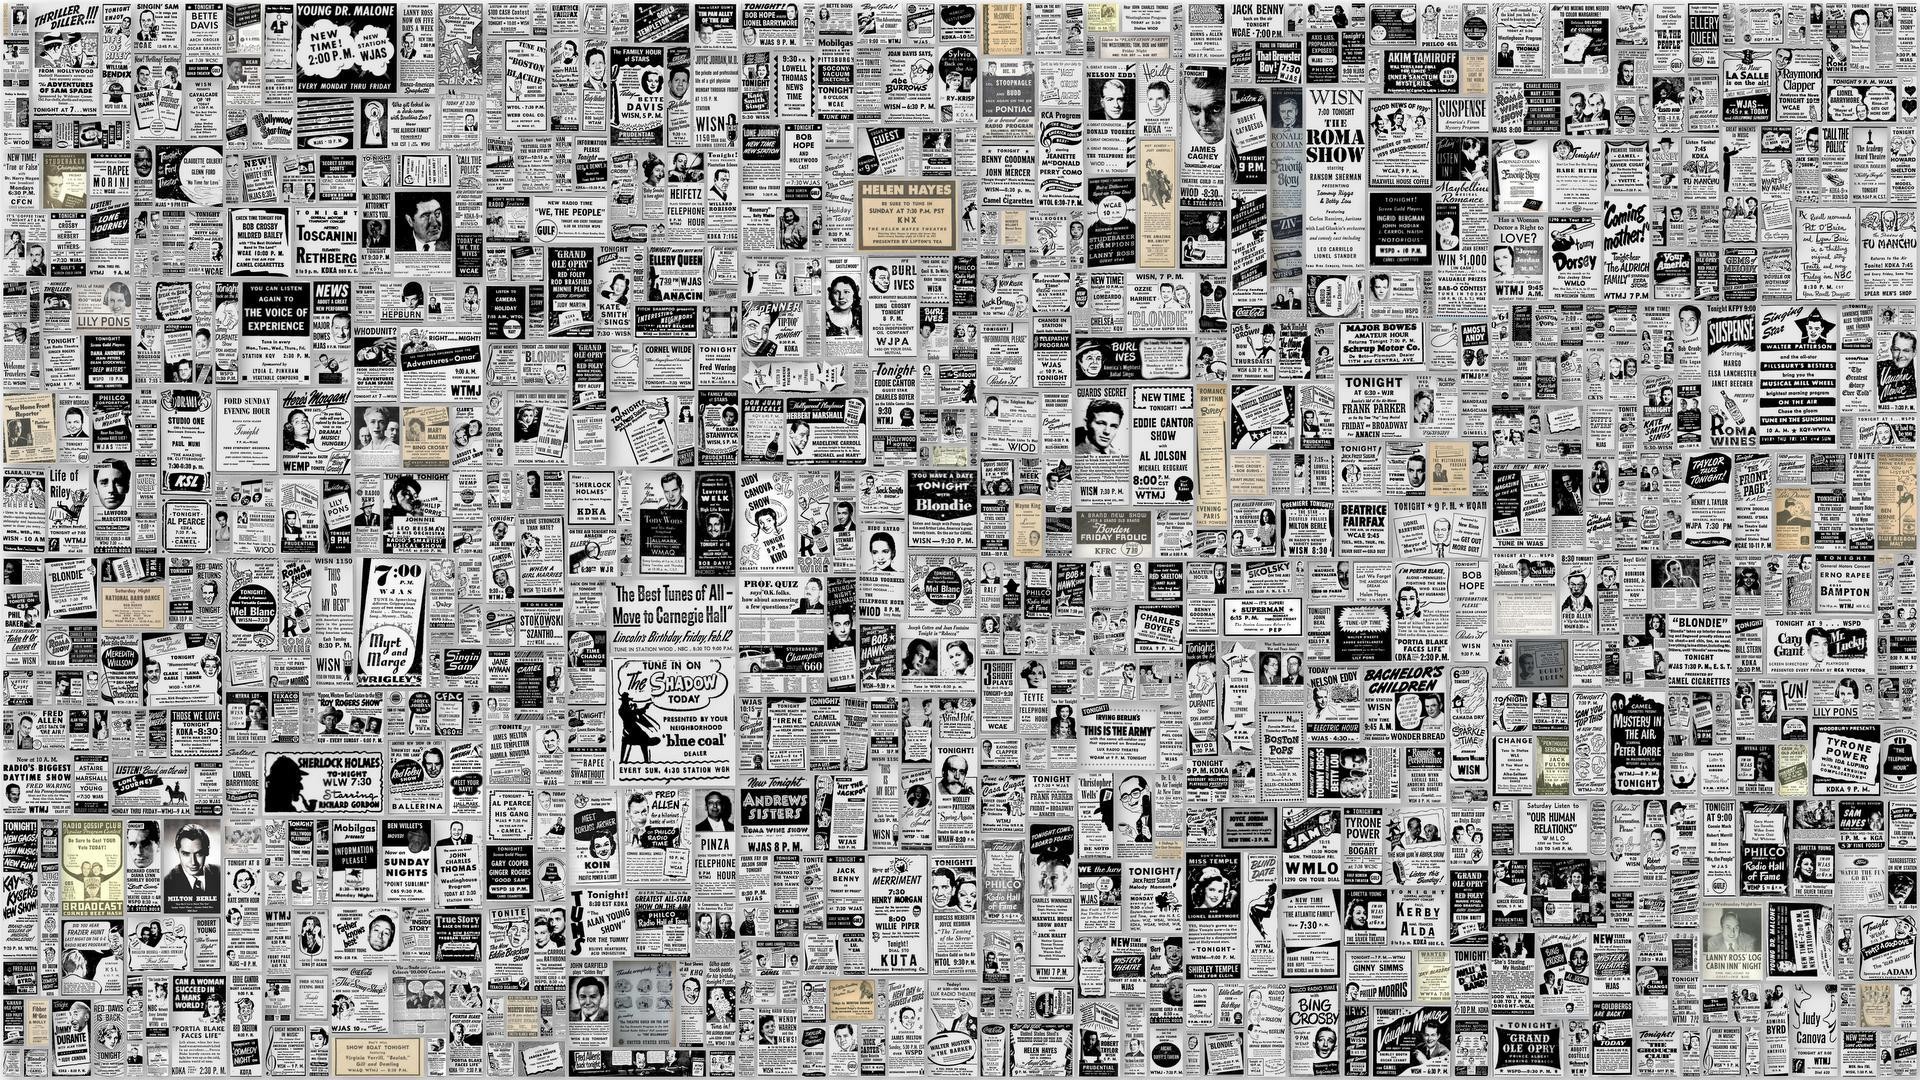 Download Newspaper As Wallpaper Wallpapersafari. Collage backgrounds wallpapersafari